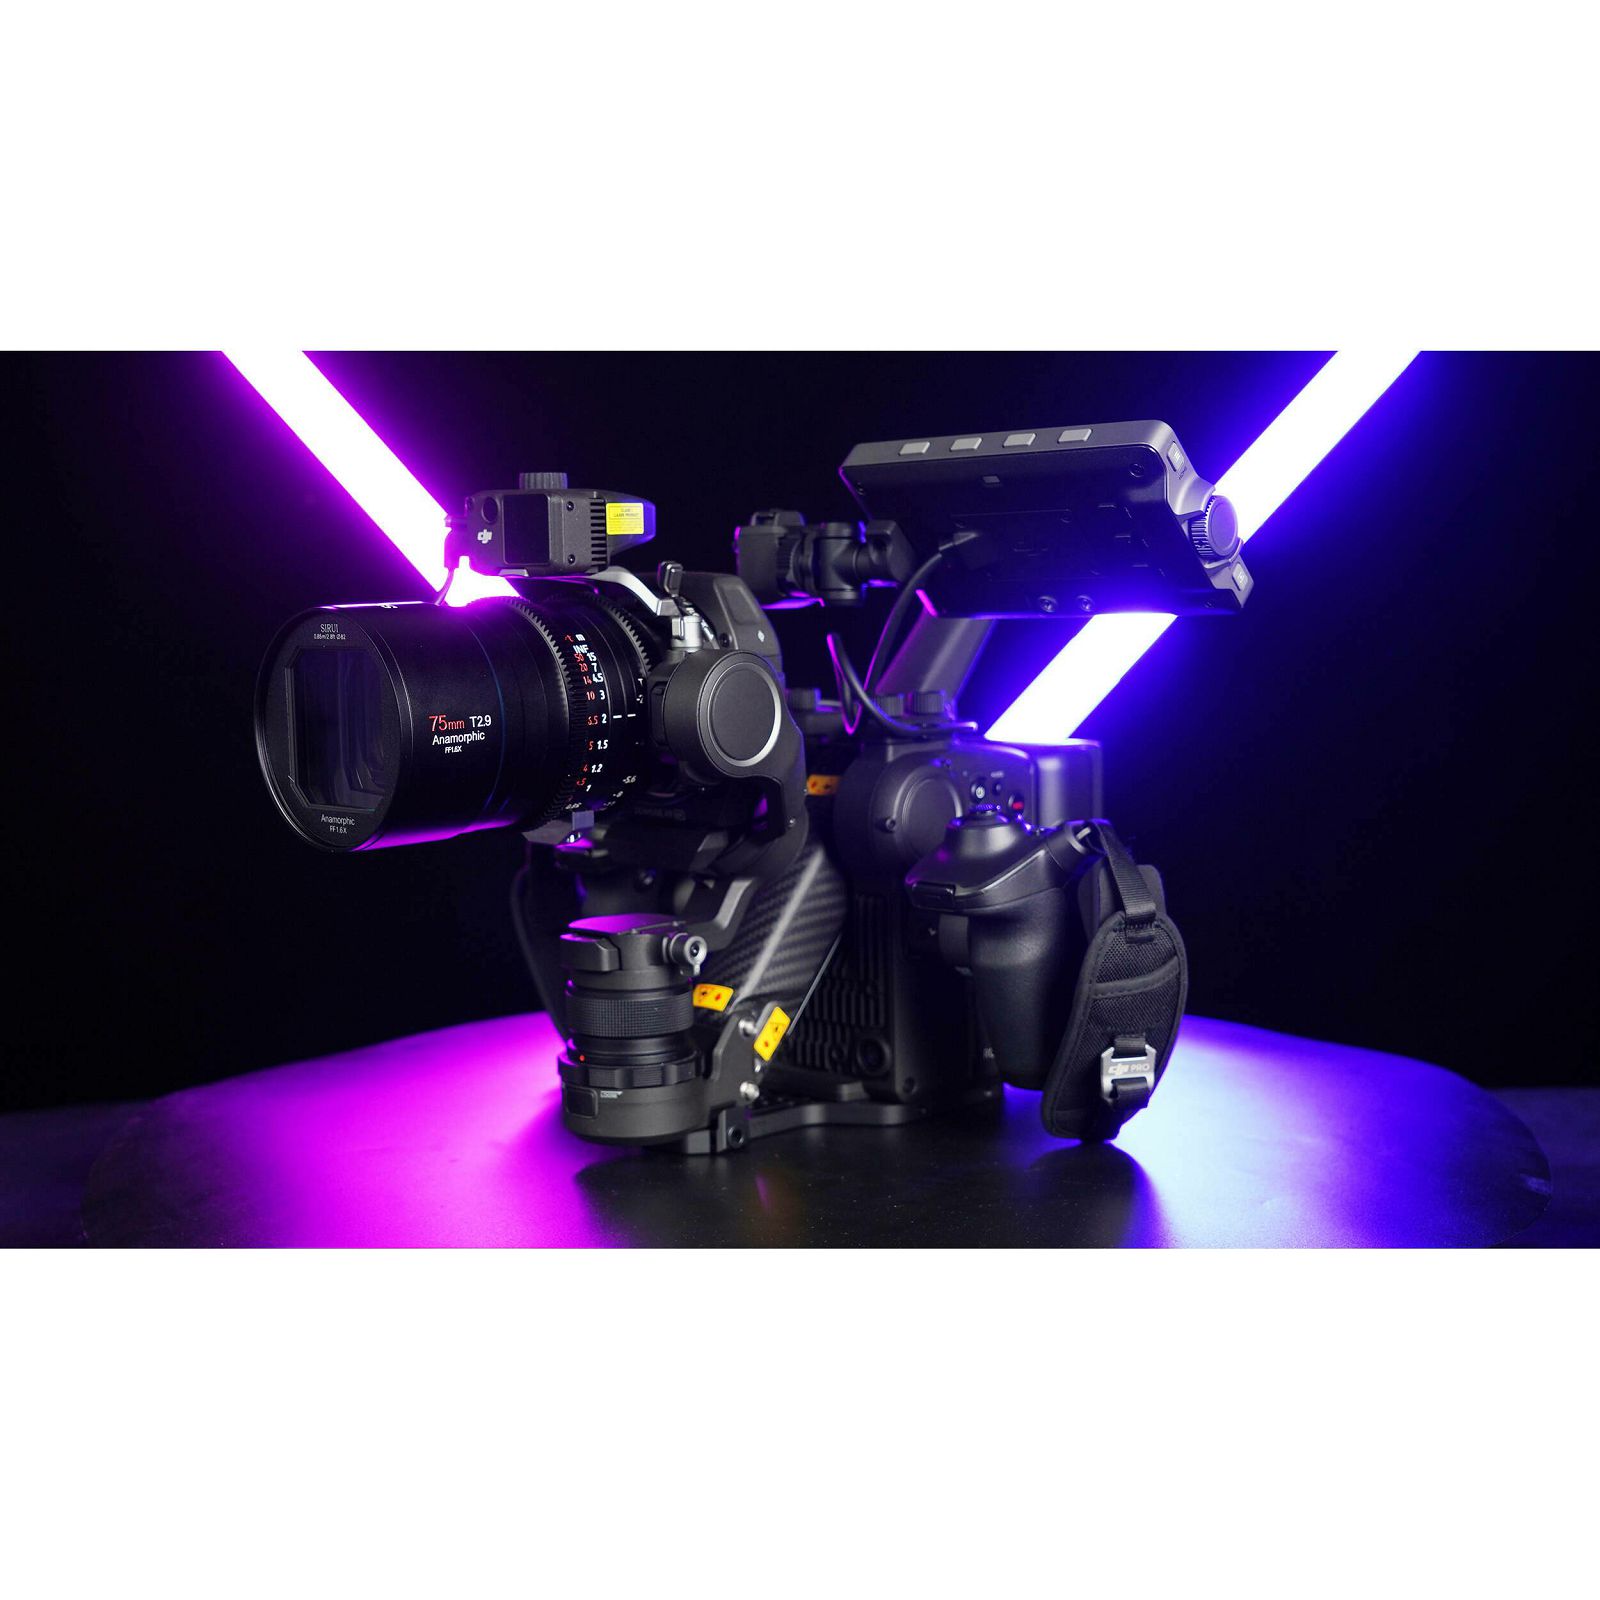 Sirui 75mm T2.9 1.6x Anamorphic lens Venus Z75 objektiv za Nikon Z